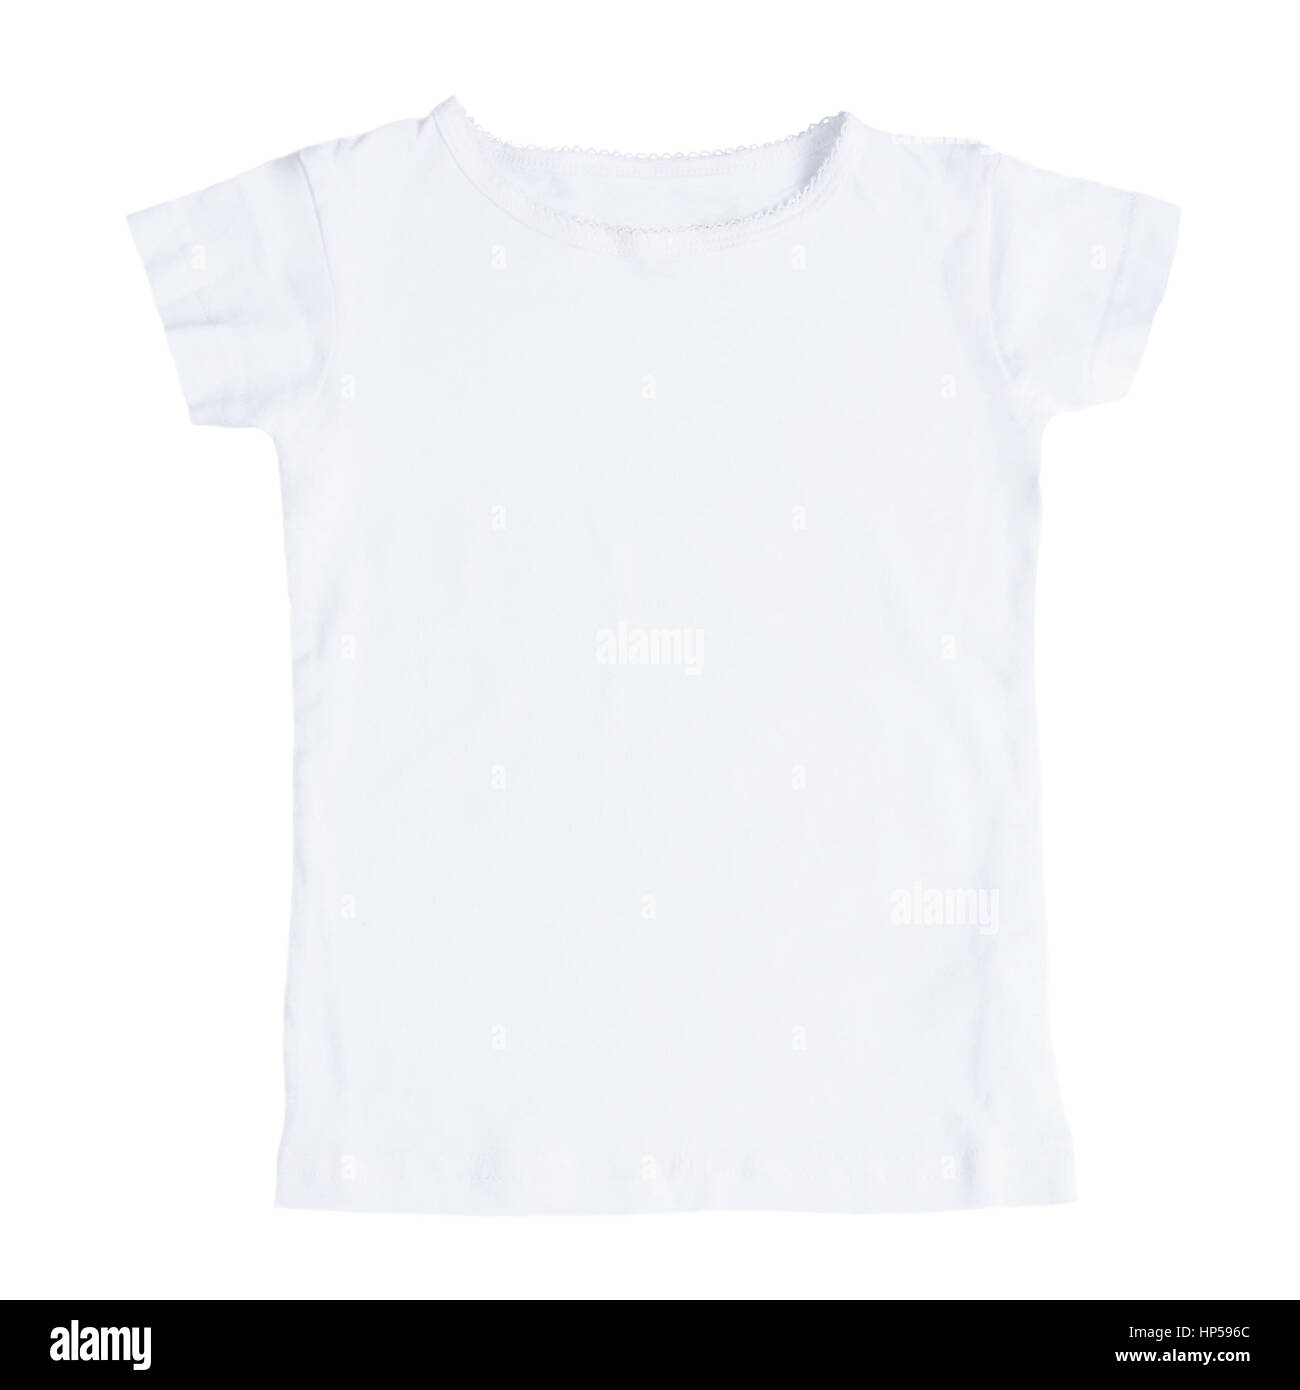 White blank female t-shirt isolated on white background. Flat lay Stock Photo